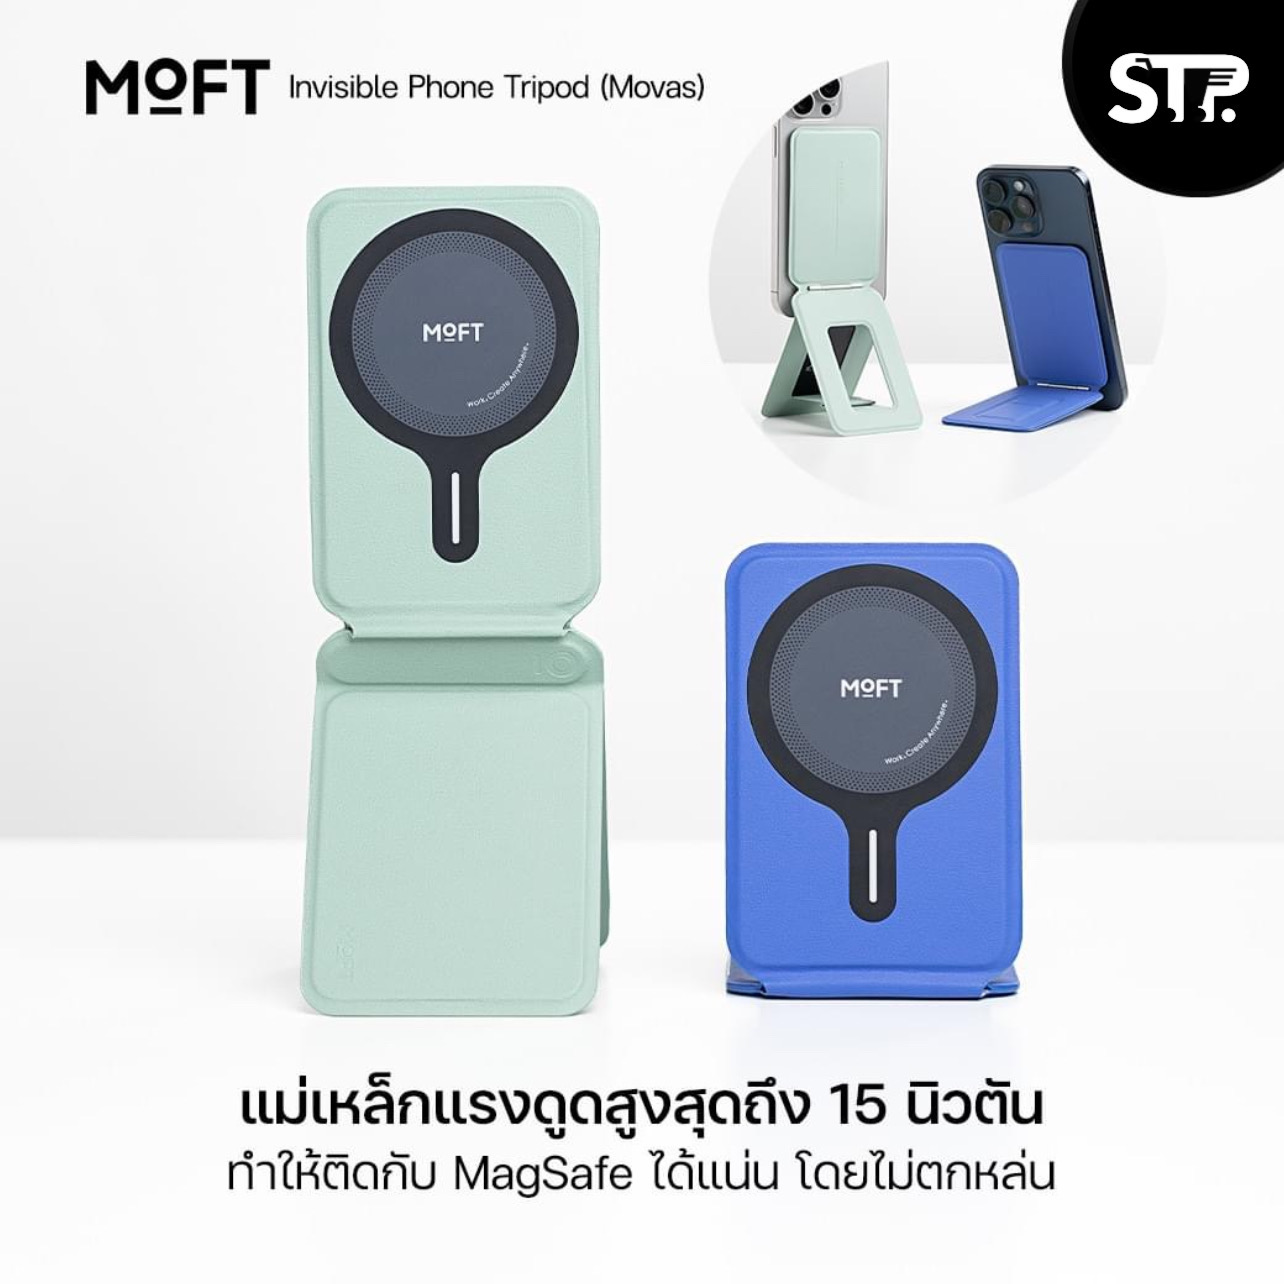 MOFT Snap Invisible Phone Tripod (MOVAS) ขาตั้งสำหรับ Smartphone  แบบแม่เหล็ก - Black รีวิวชัด คัดของดี สั่งง่าย ส่งไว ได้ของชัวร์